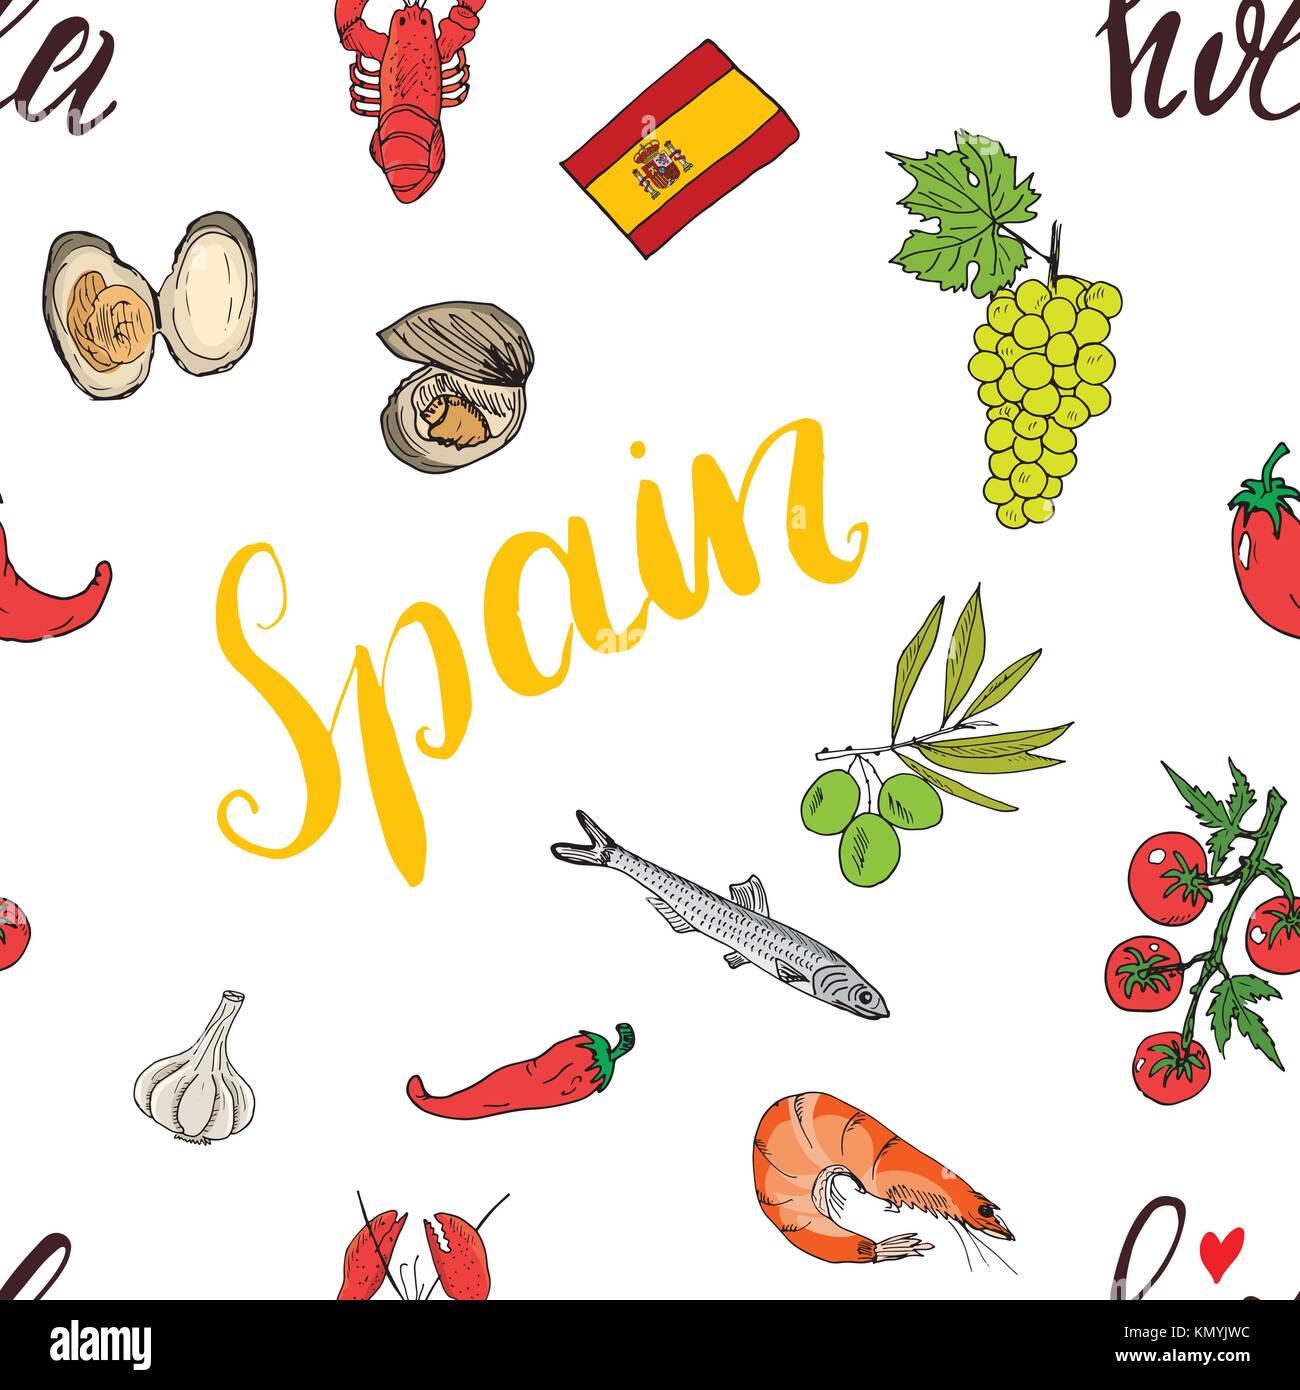 Google doodle celebrating Espeto, a tasty Spanish dish!